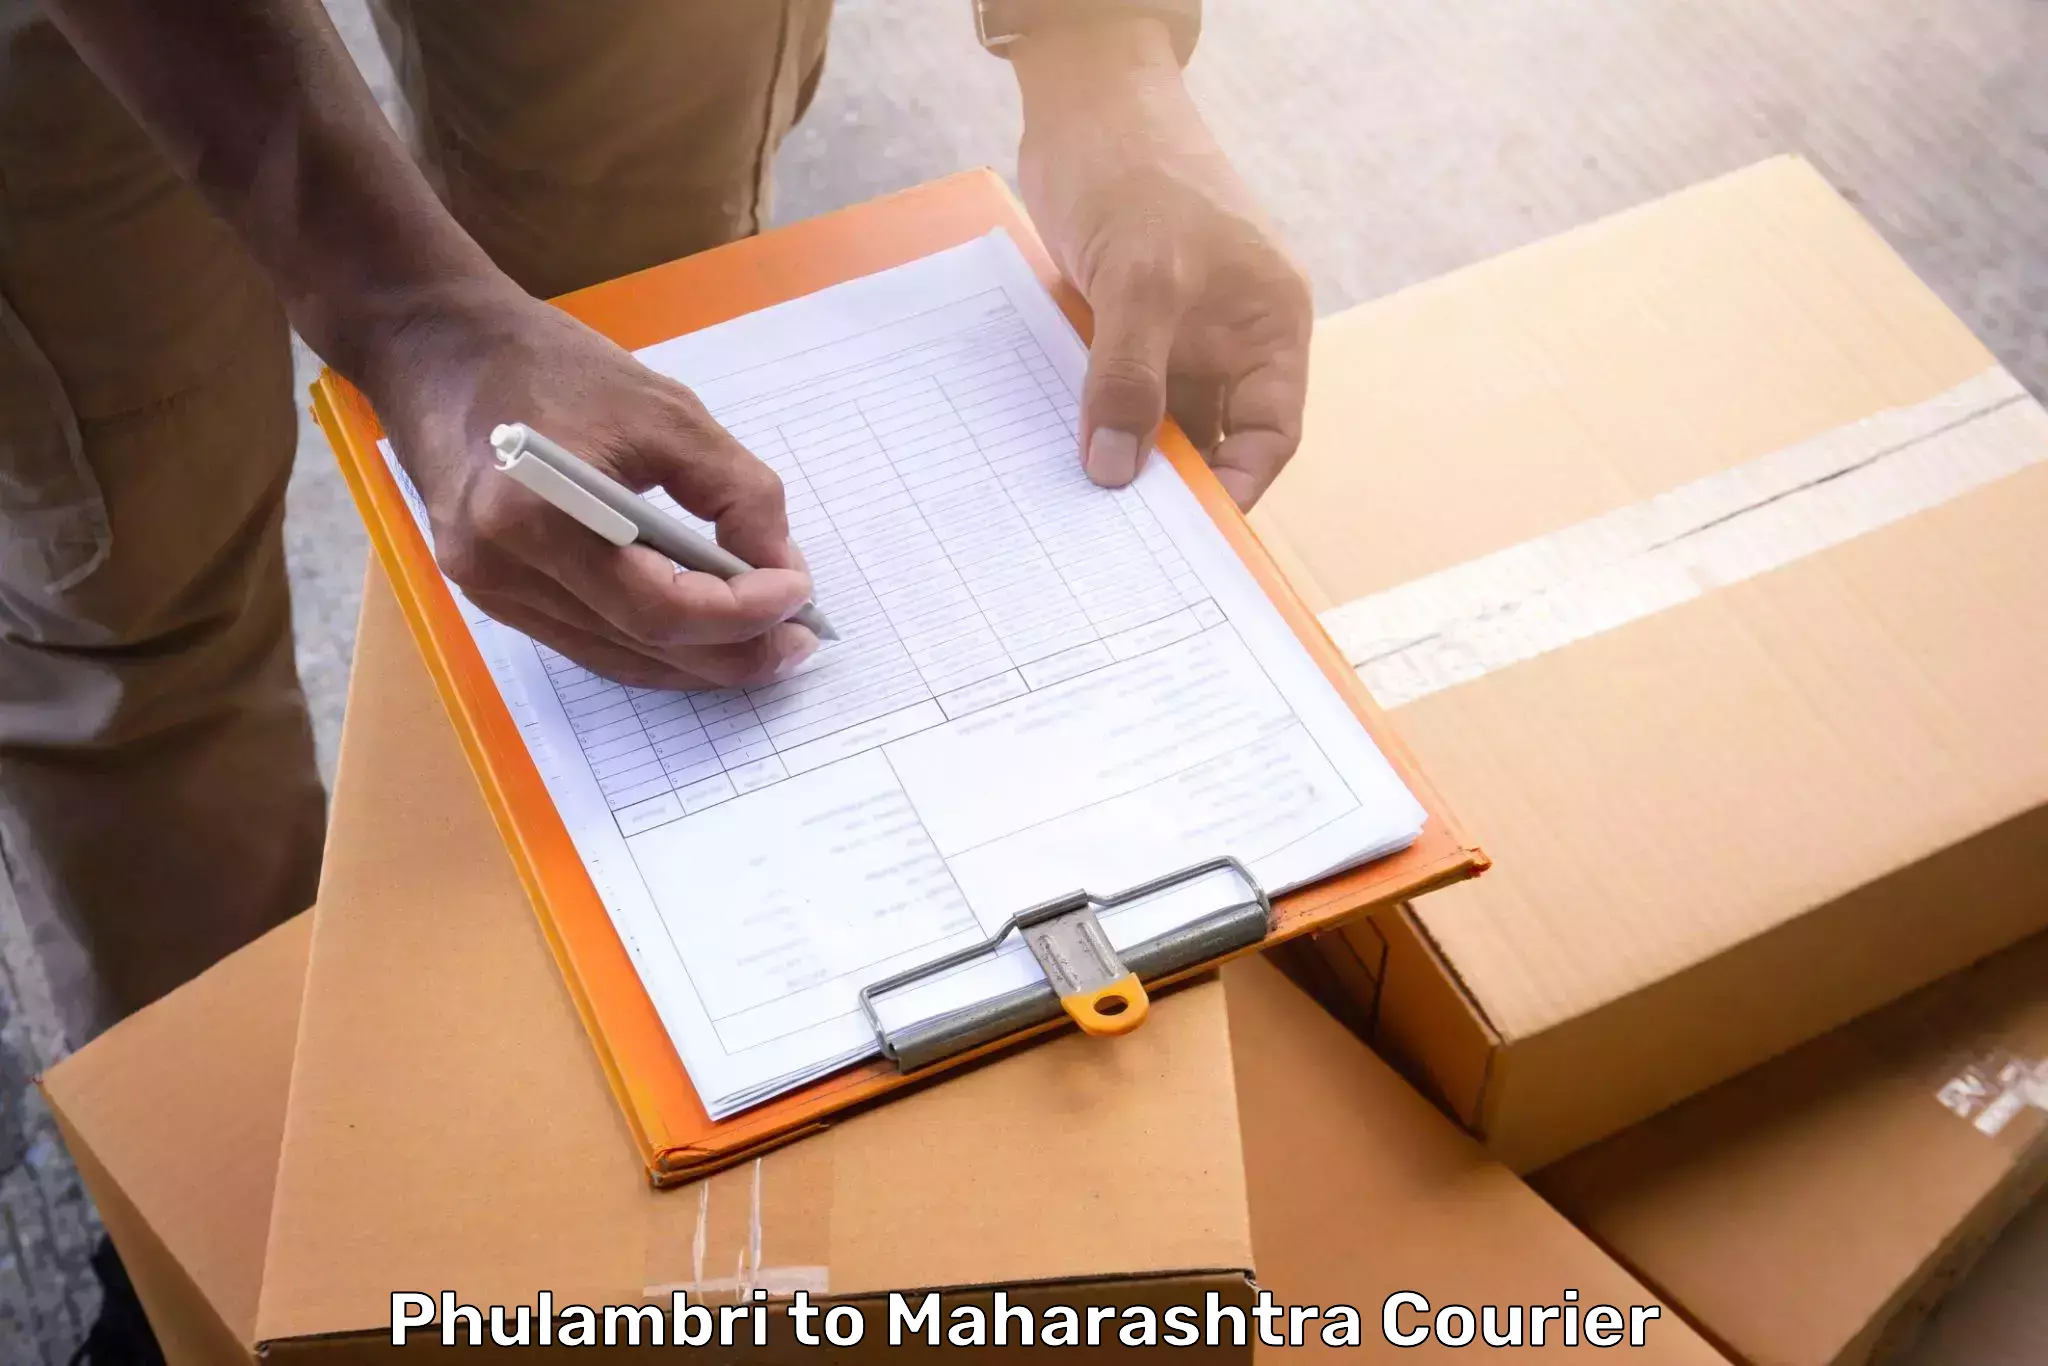 Luggage delivery network Phulambri to Maharashtra